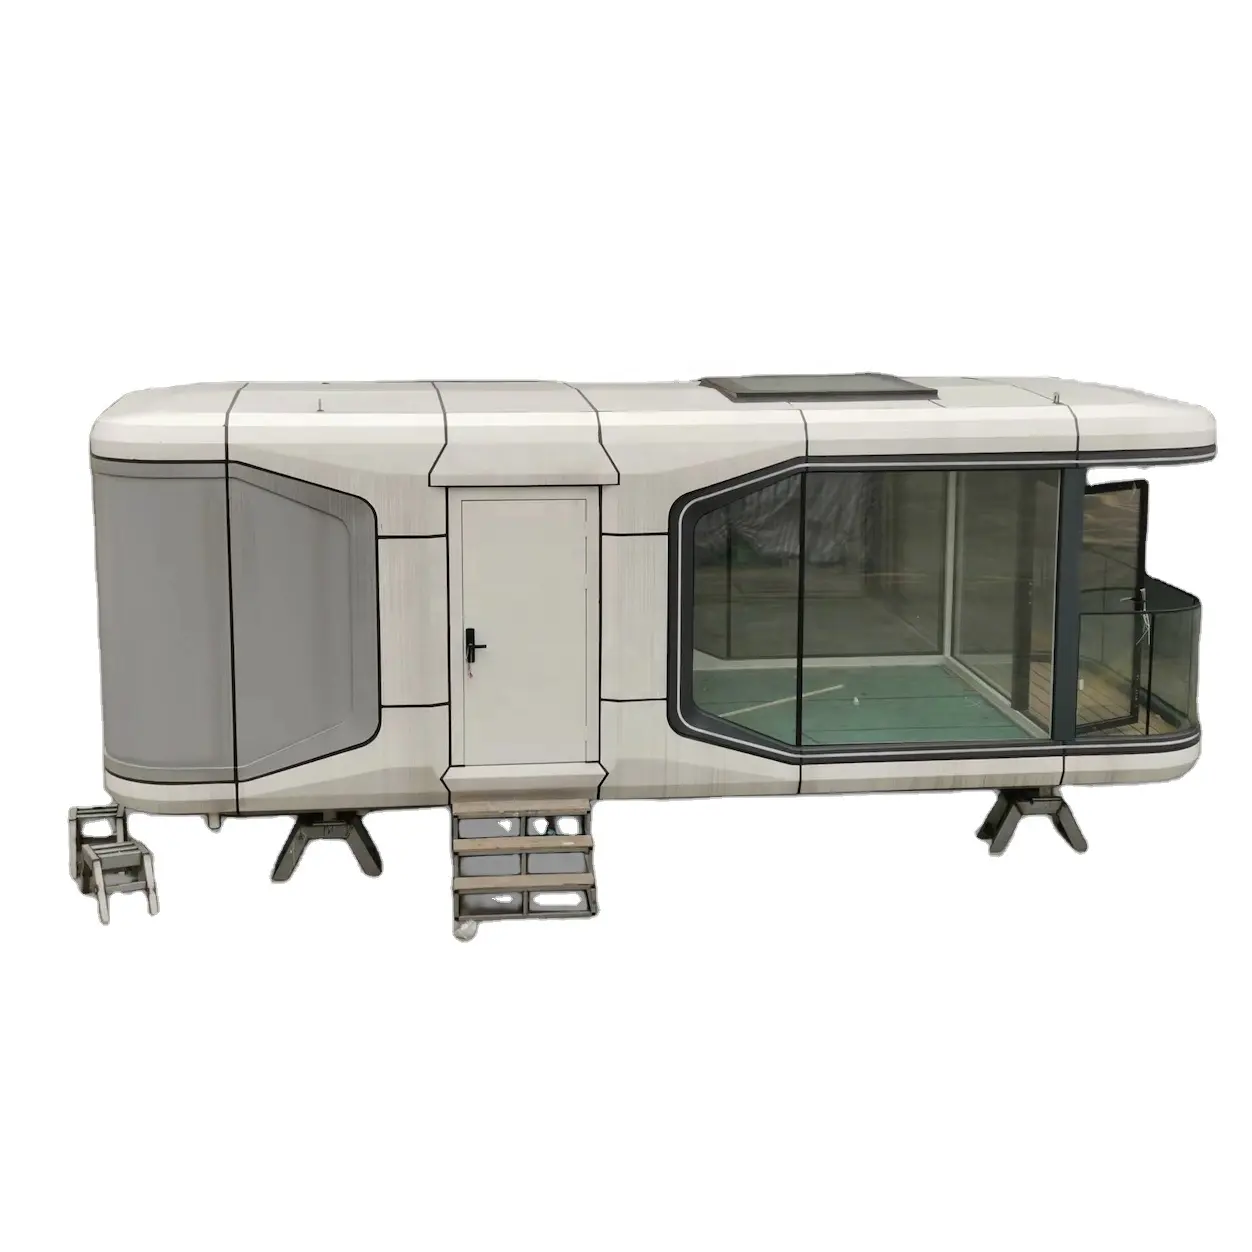 Villa móvil modular de vidrio pequeña prefabricada comercial dirigible pod Hangfa Space Homestay cápsula casa E7